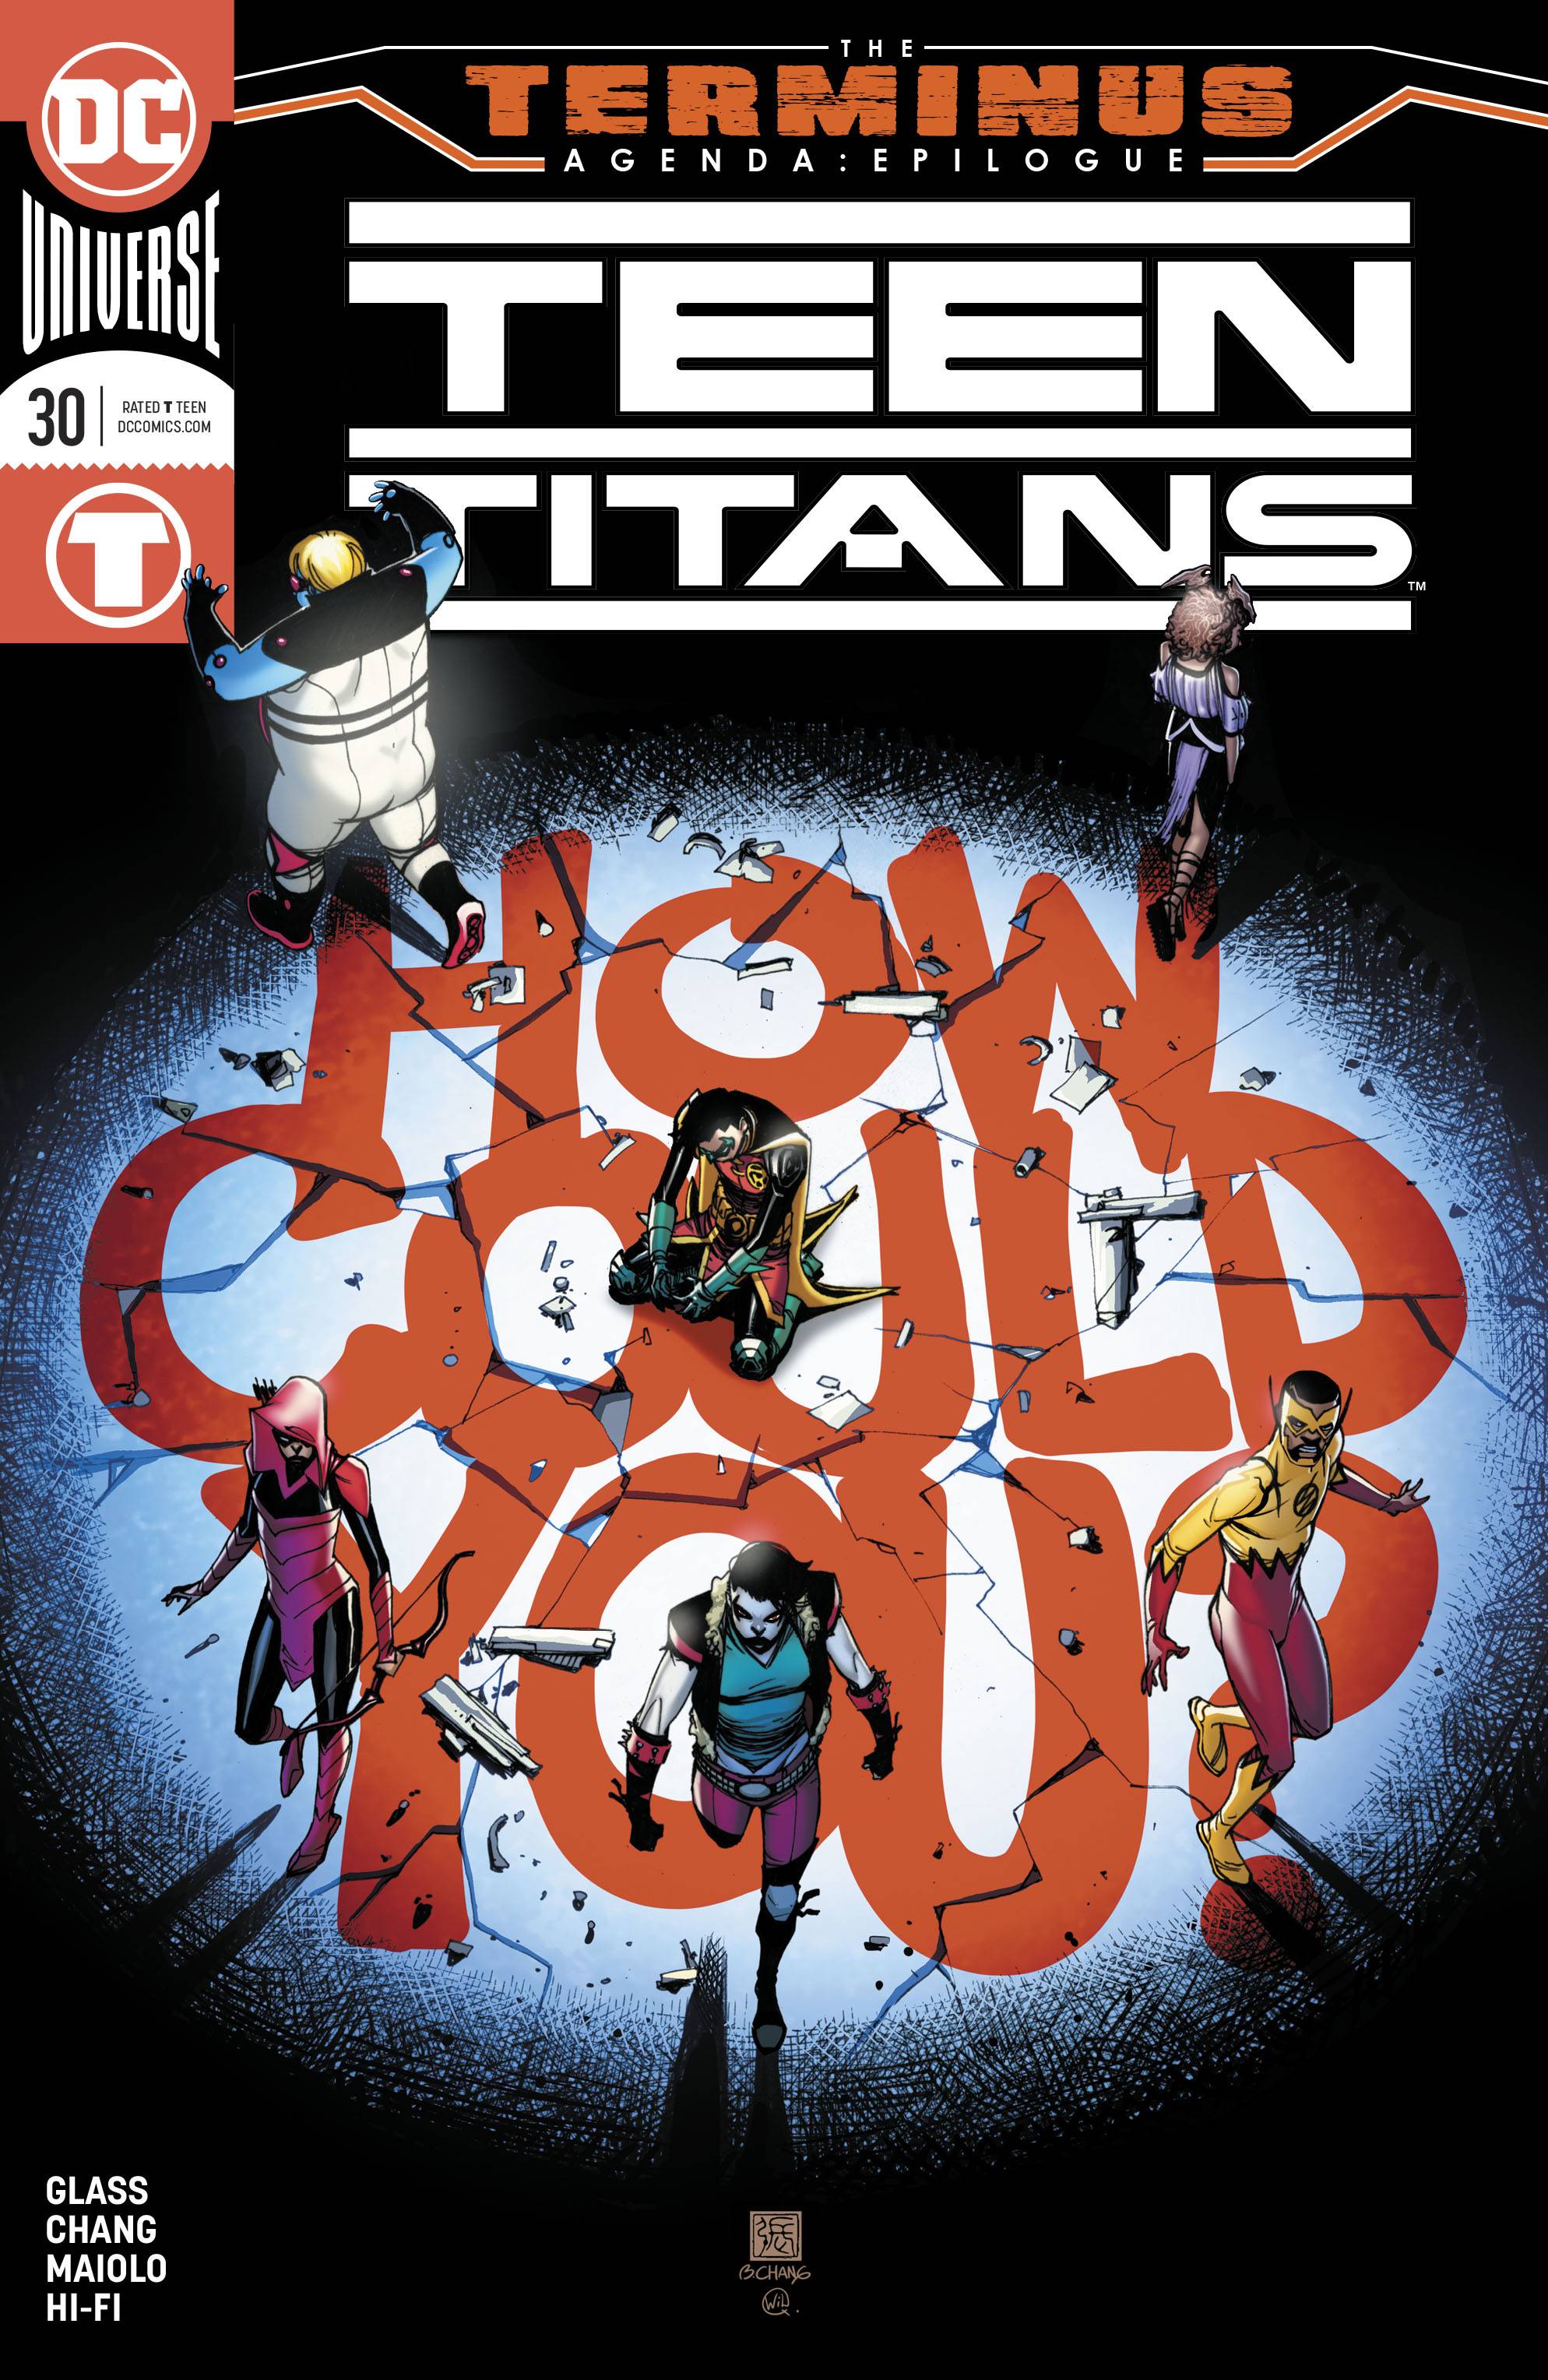 Buy Titans #30 Terminus Agenda (2016) | Phantom the Attic